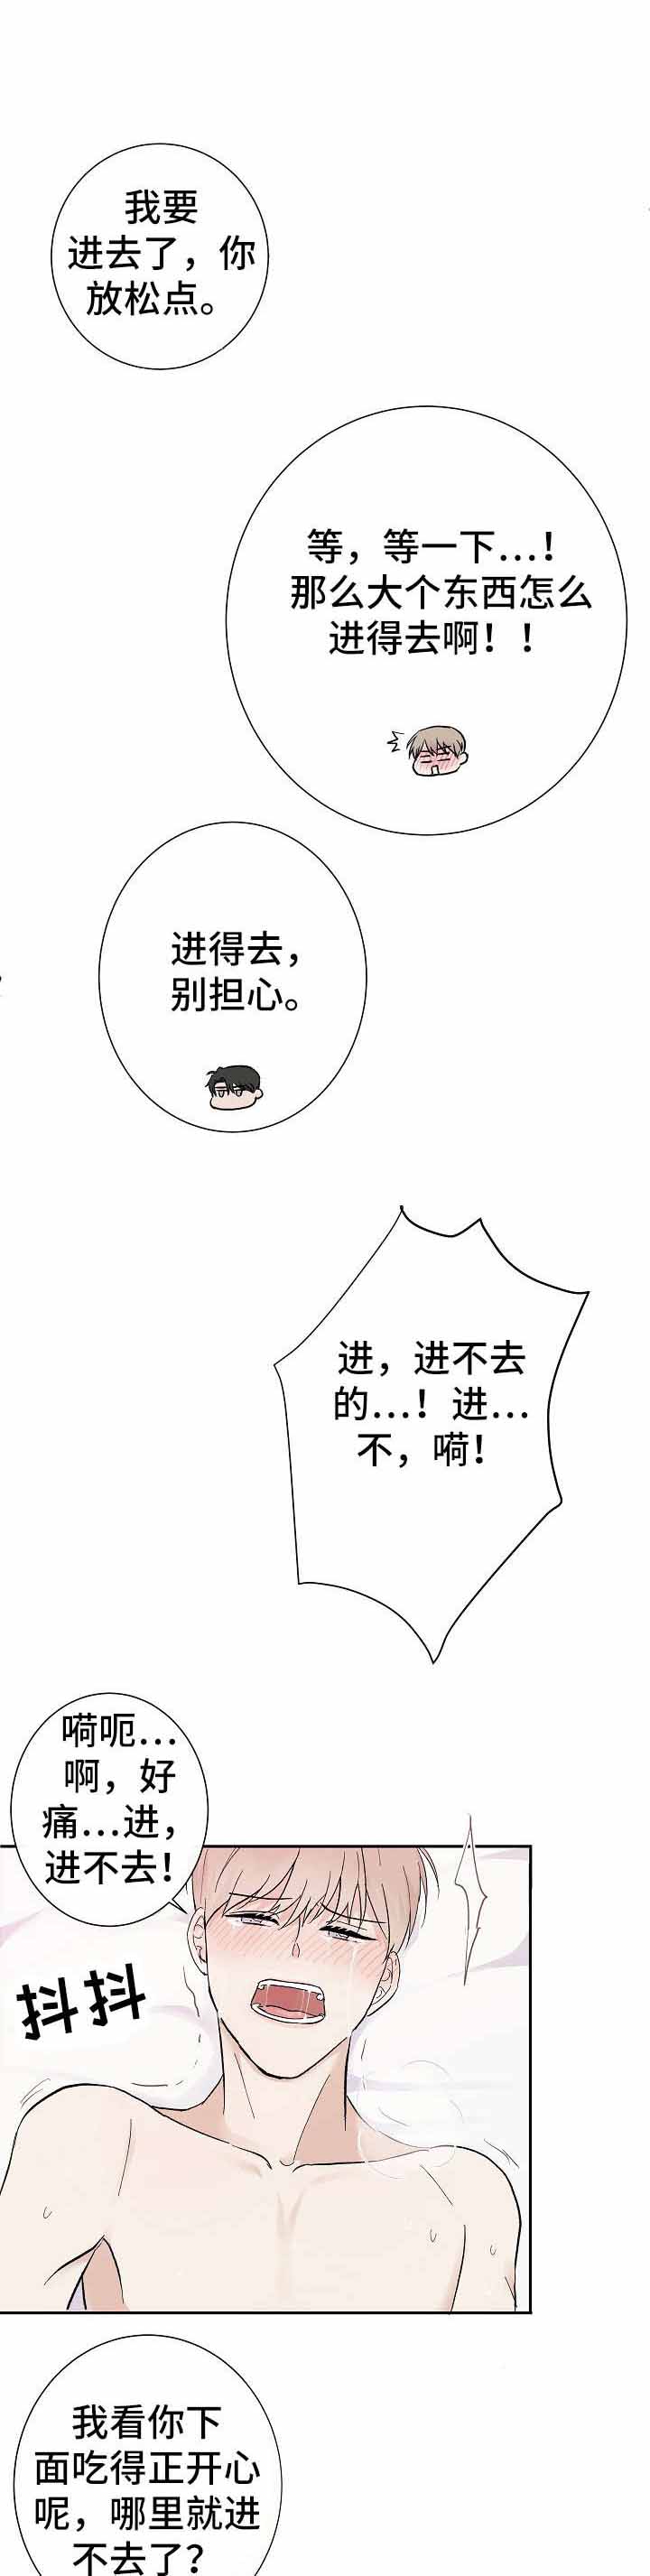 兼职恋人  第12话 漫画图片5.jpg